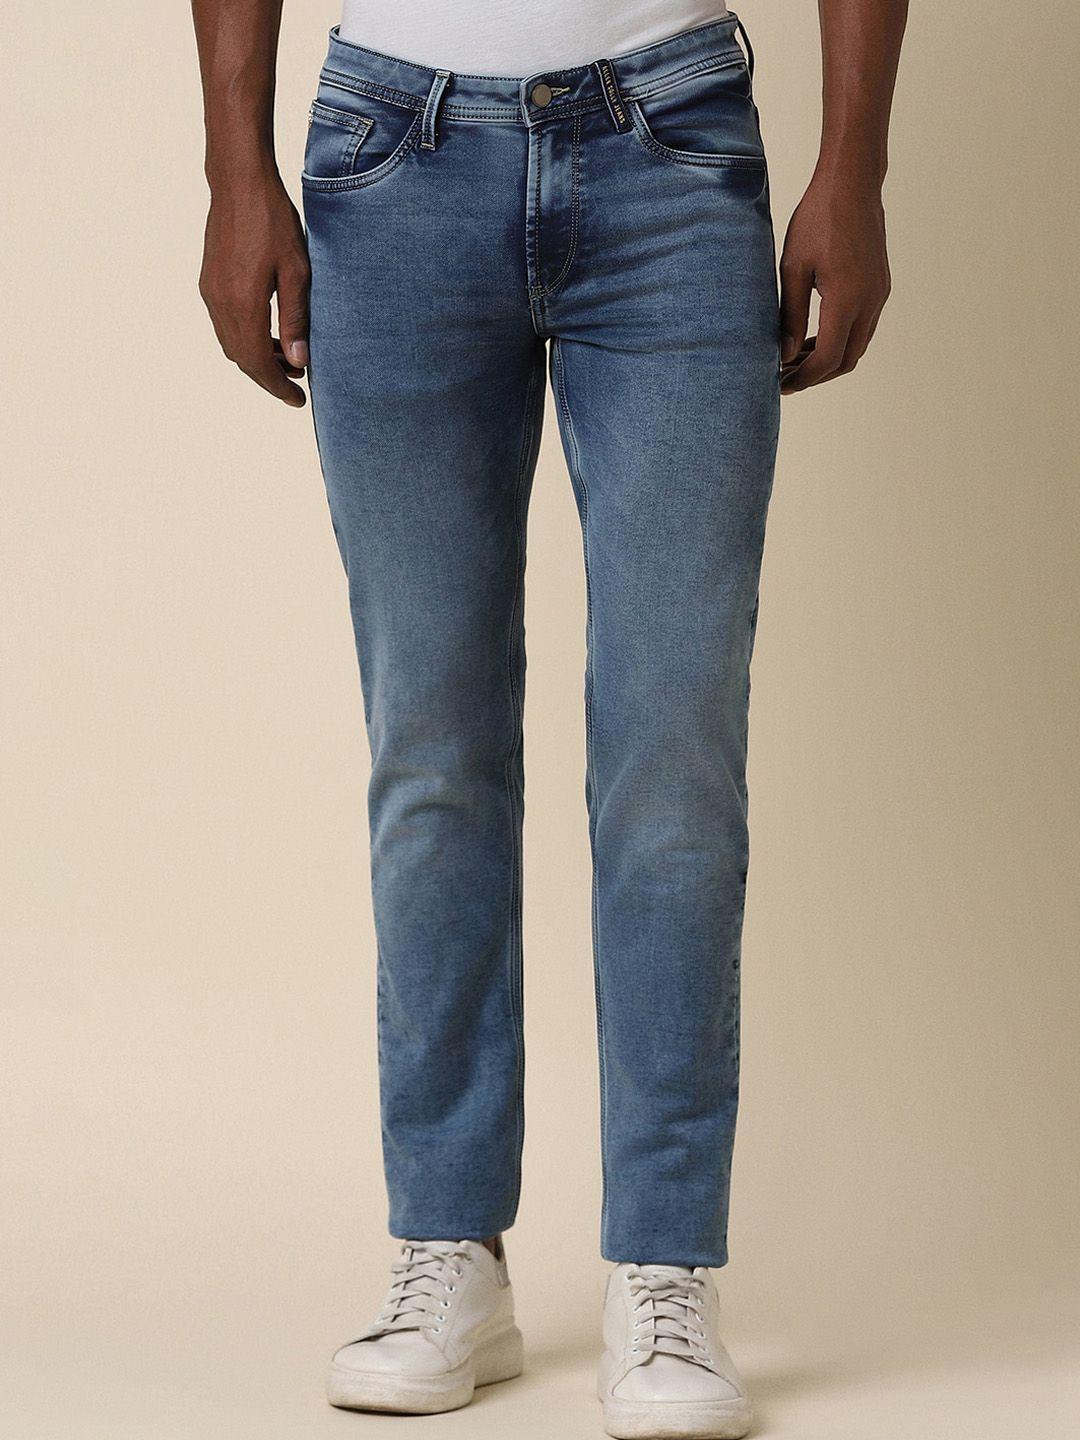 allen-solly-men-skinny-fit-clean-look-jeans